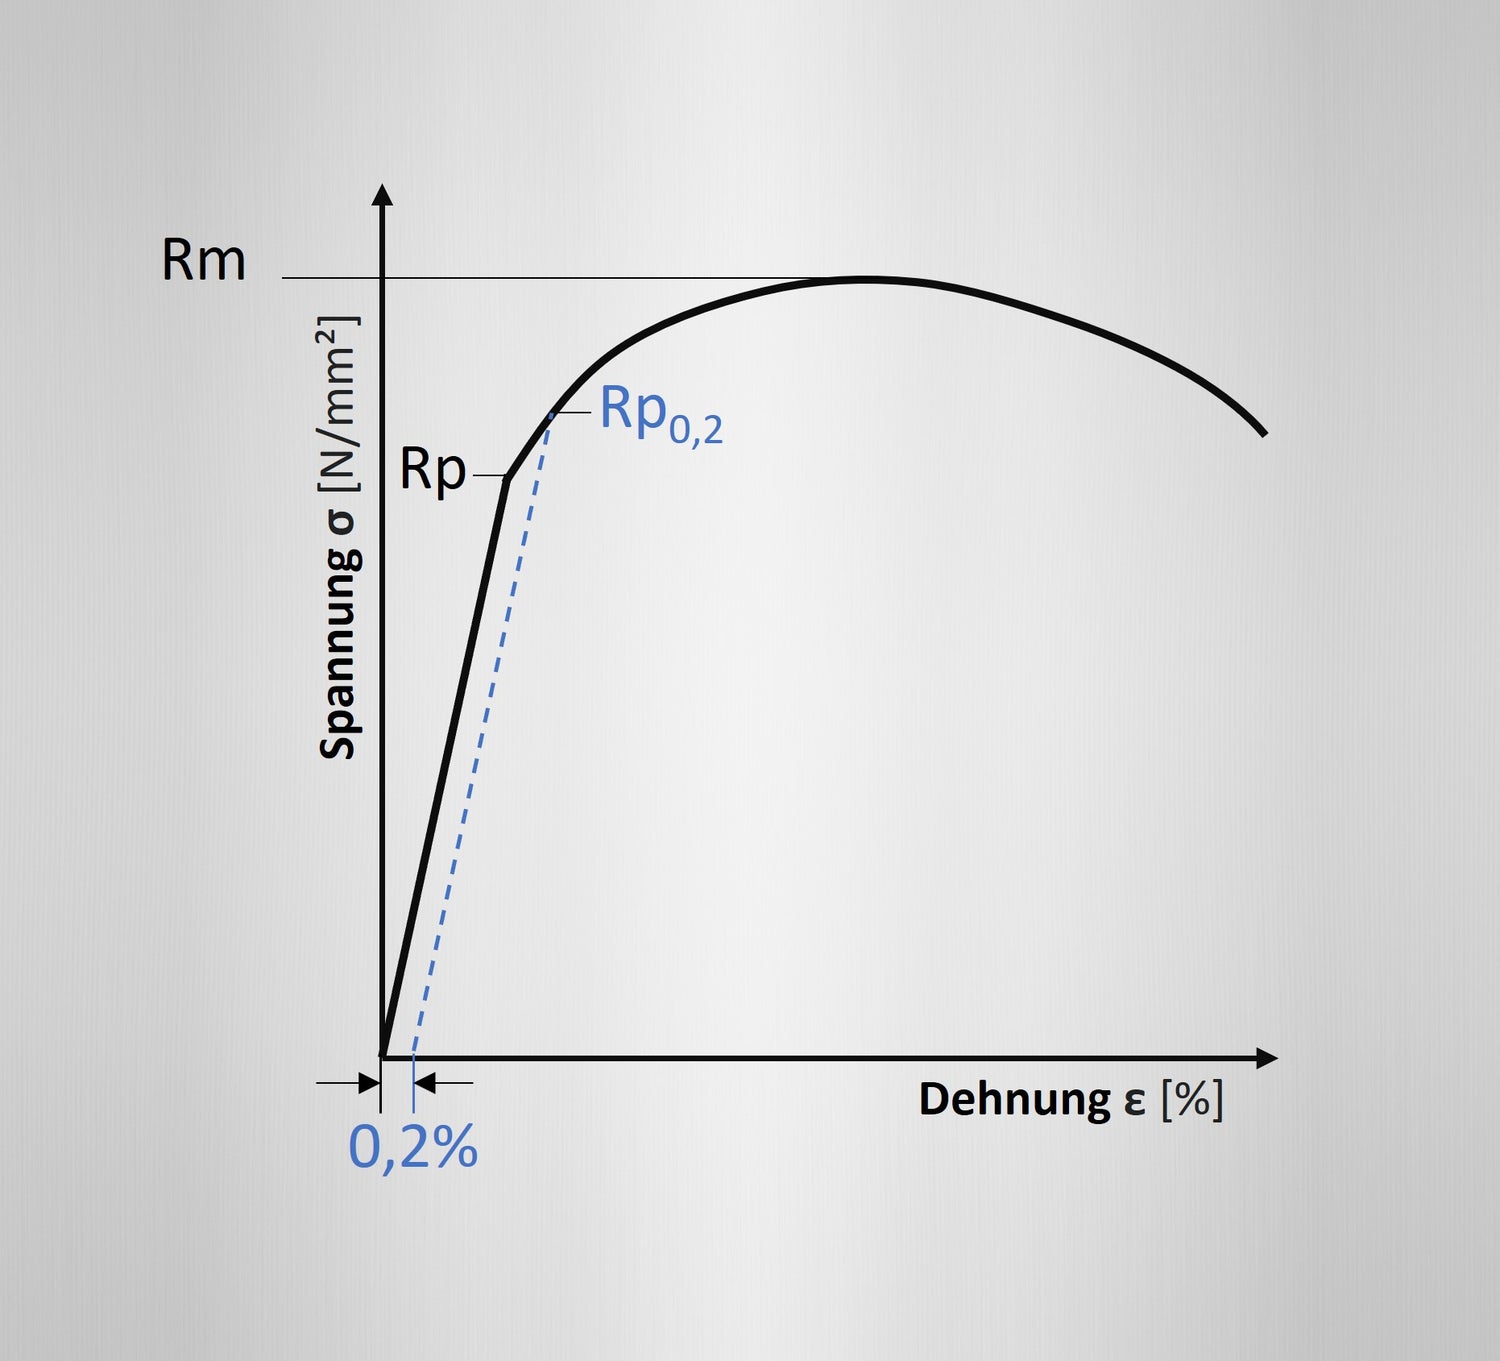 Spannungs-Dehnungsdiagramm mit Erläuterung der Streckgrenze Rp0,2